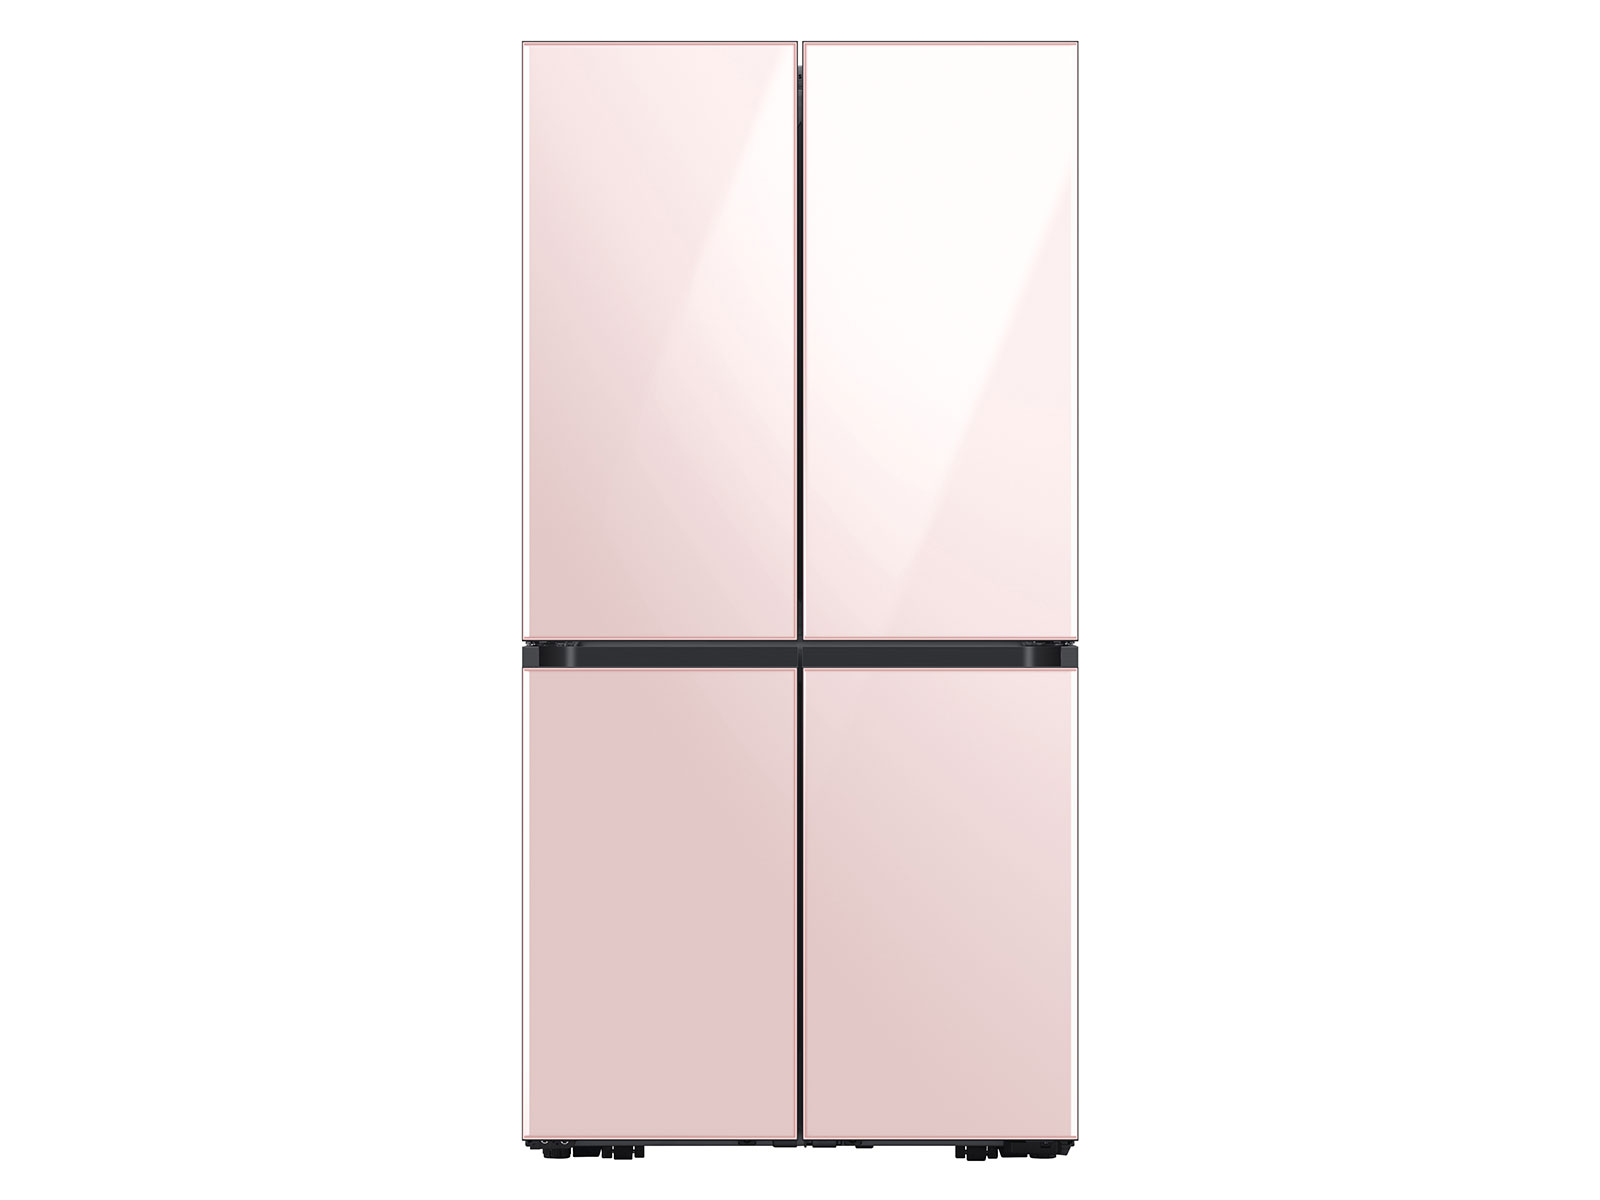 Bespoke 4-Door Flex™ Refrigerator (29 cu. ft.) in Rose Pink Glass